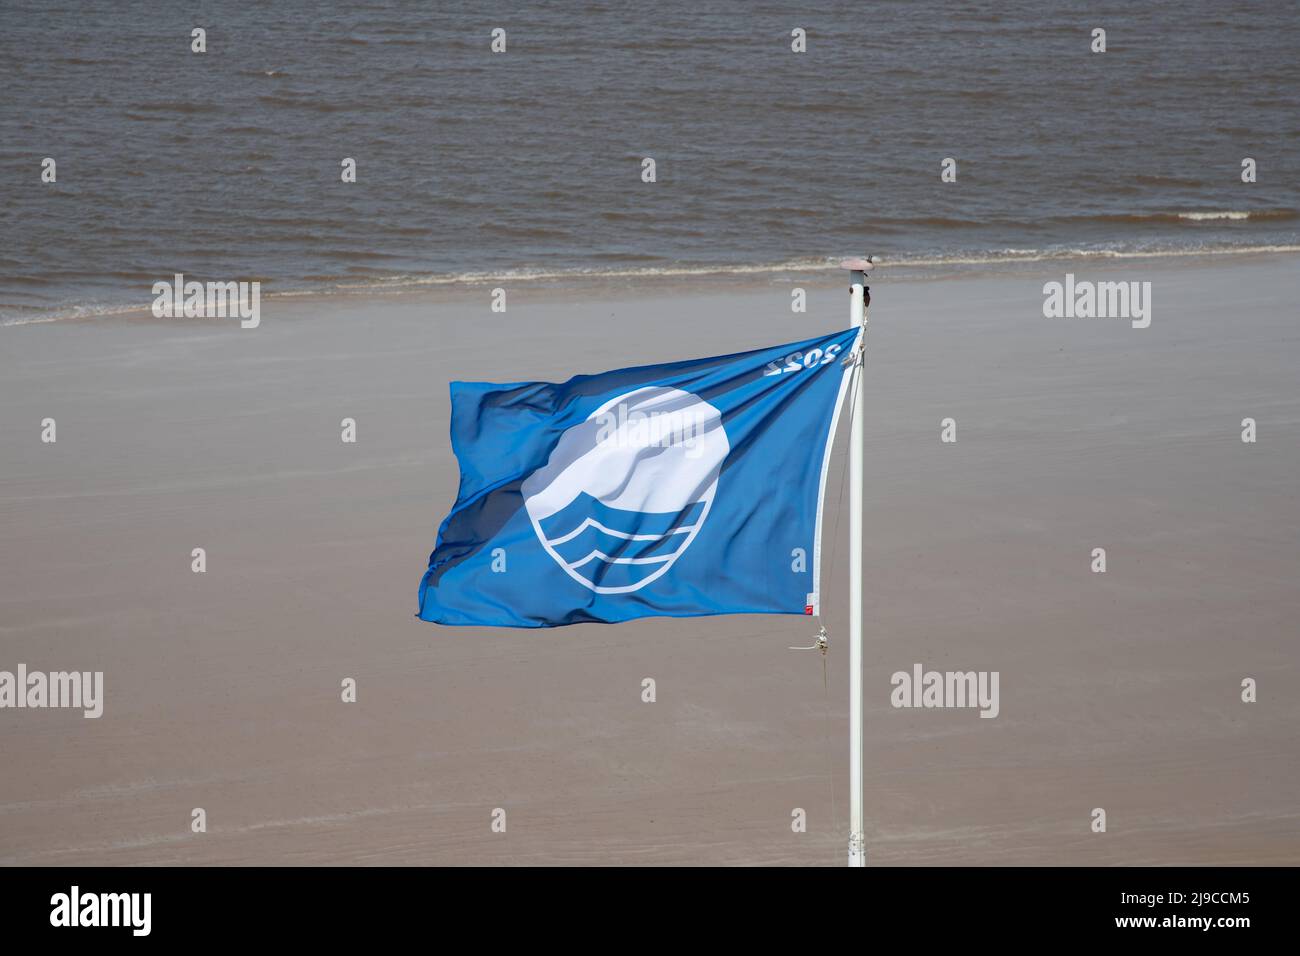 La prestigiosa bandiera blu vola a Sheringham Beach a North Nofolk, Regno Unito, in una ventosa giornata di primavera Foto Stock